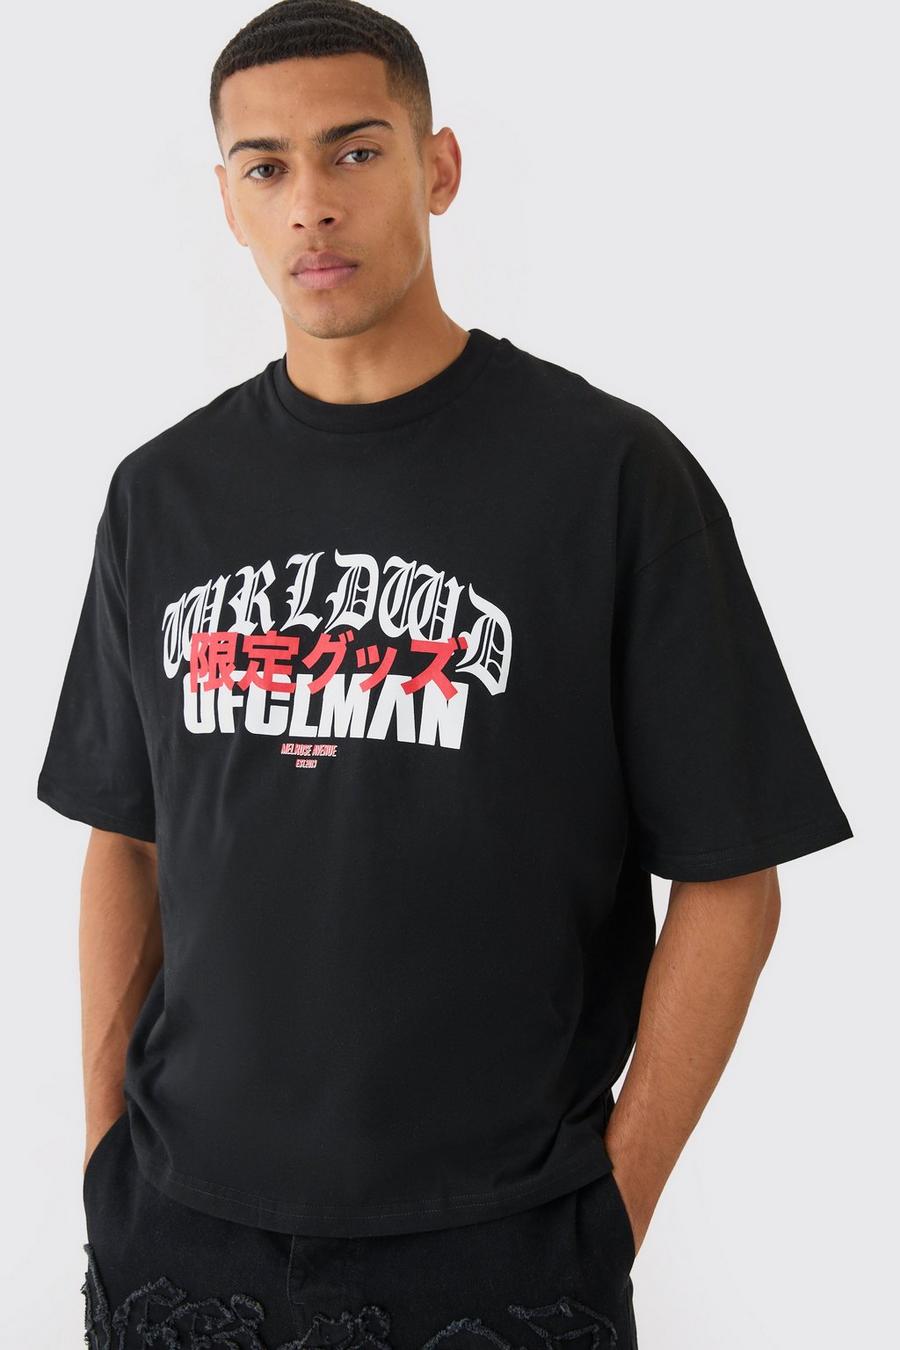 Black Oversized Boxy Ofcl Man T-shirt